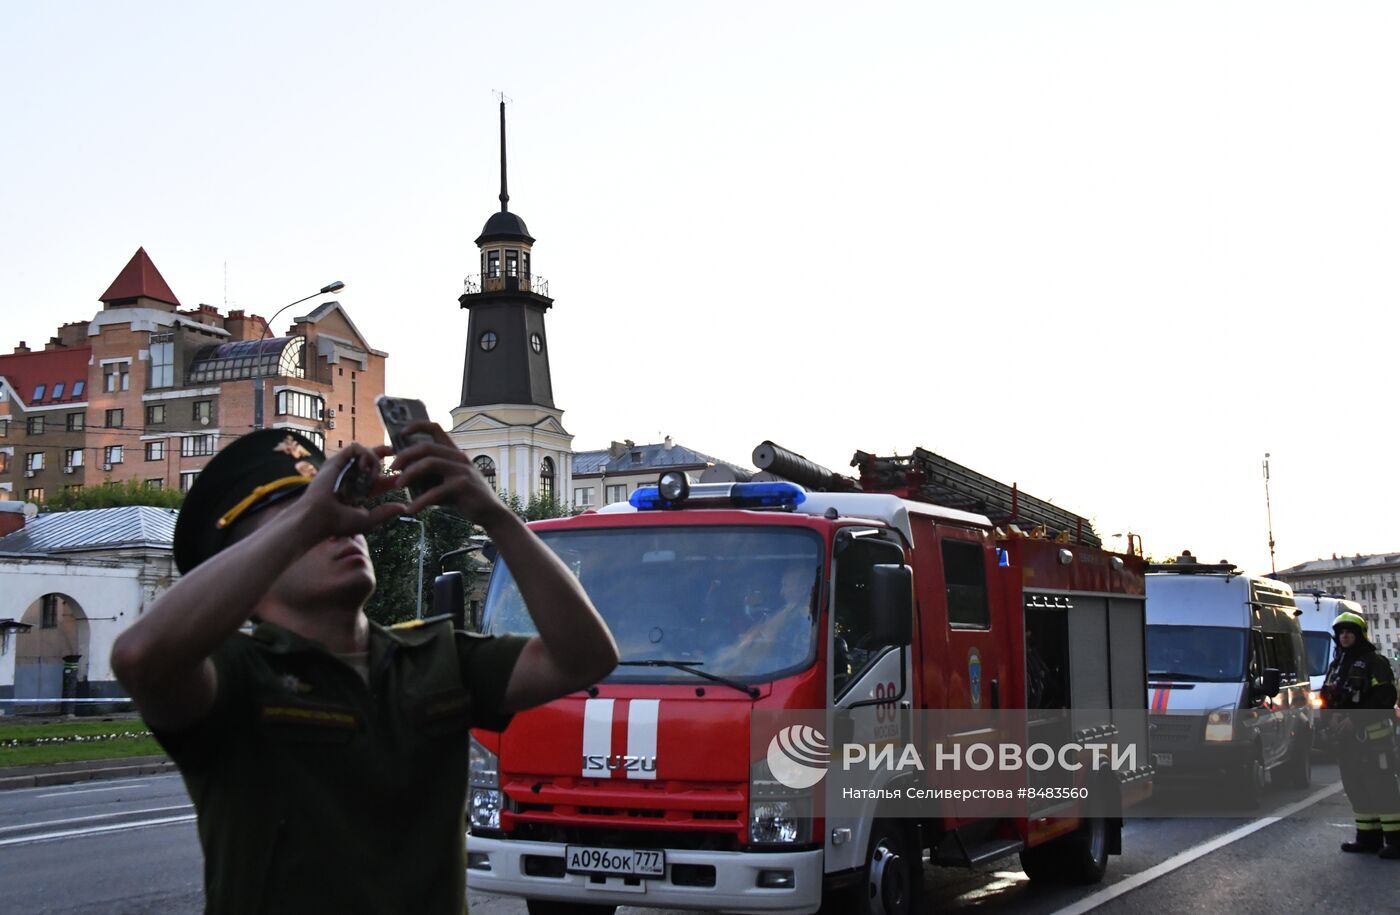 عمدة موسكو: تعرض مبنيين لهجوم بطائرتين مسيرتين دون وقوع إصابات